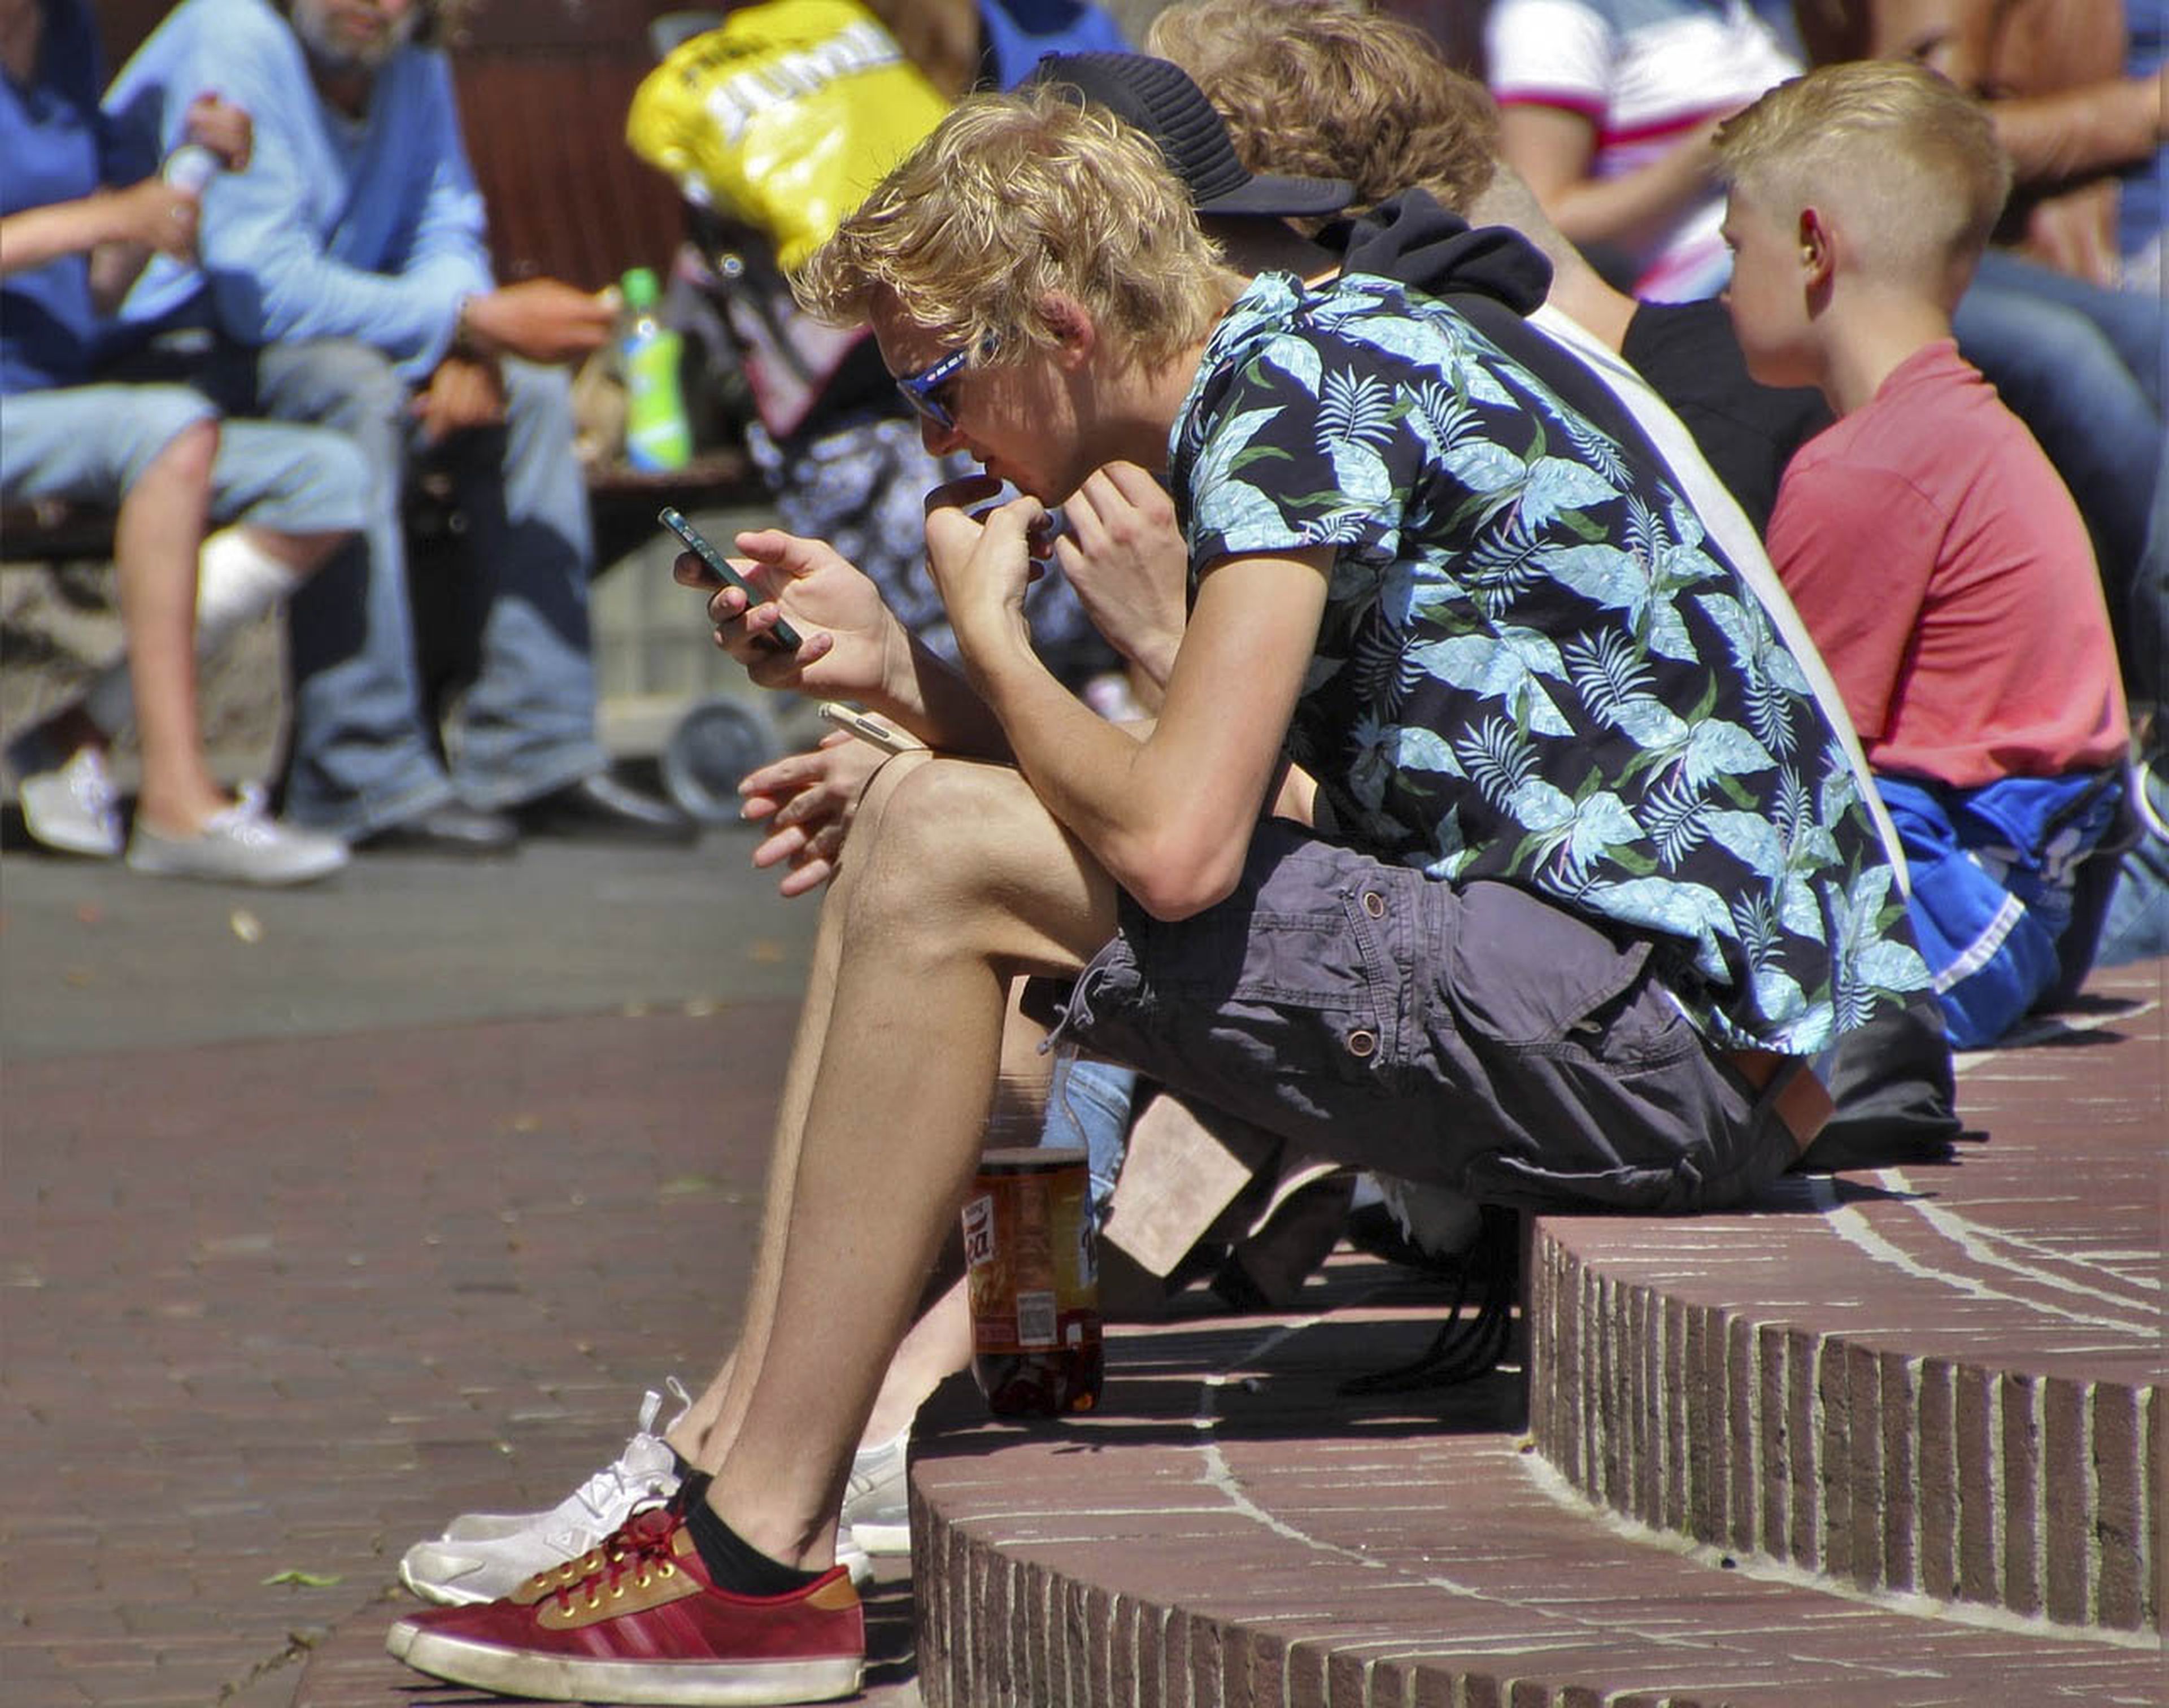 Mirando el móvil en la calle